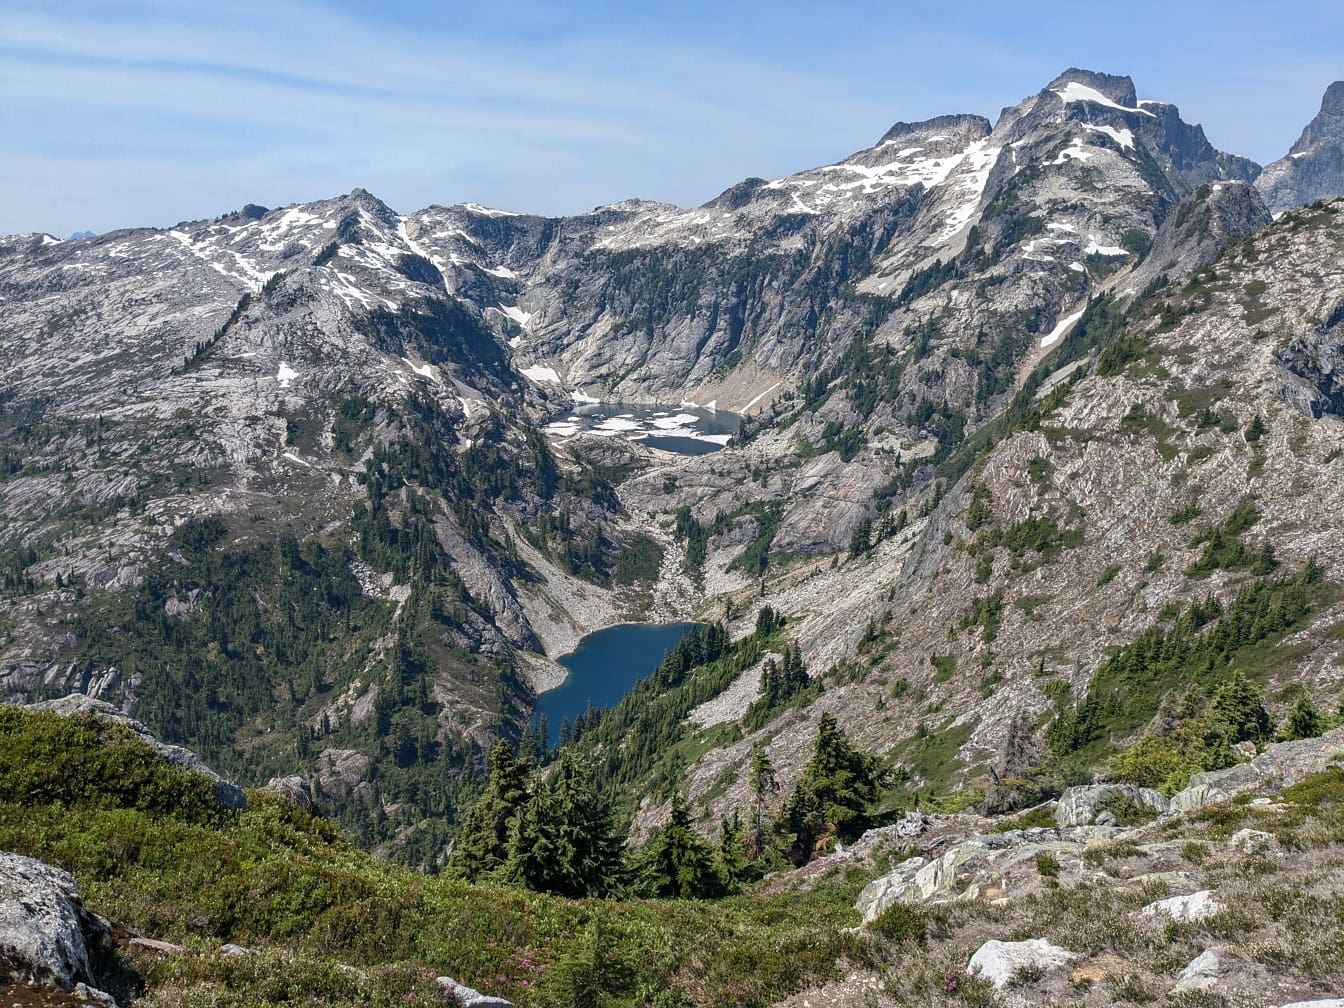 Peisaj de munți cu un lac Thornton în mijloc în parcul național North Cascades din Washington